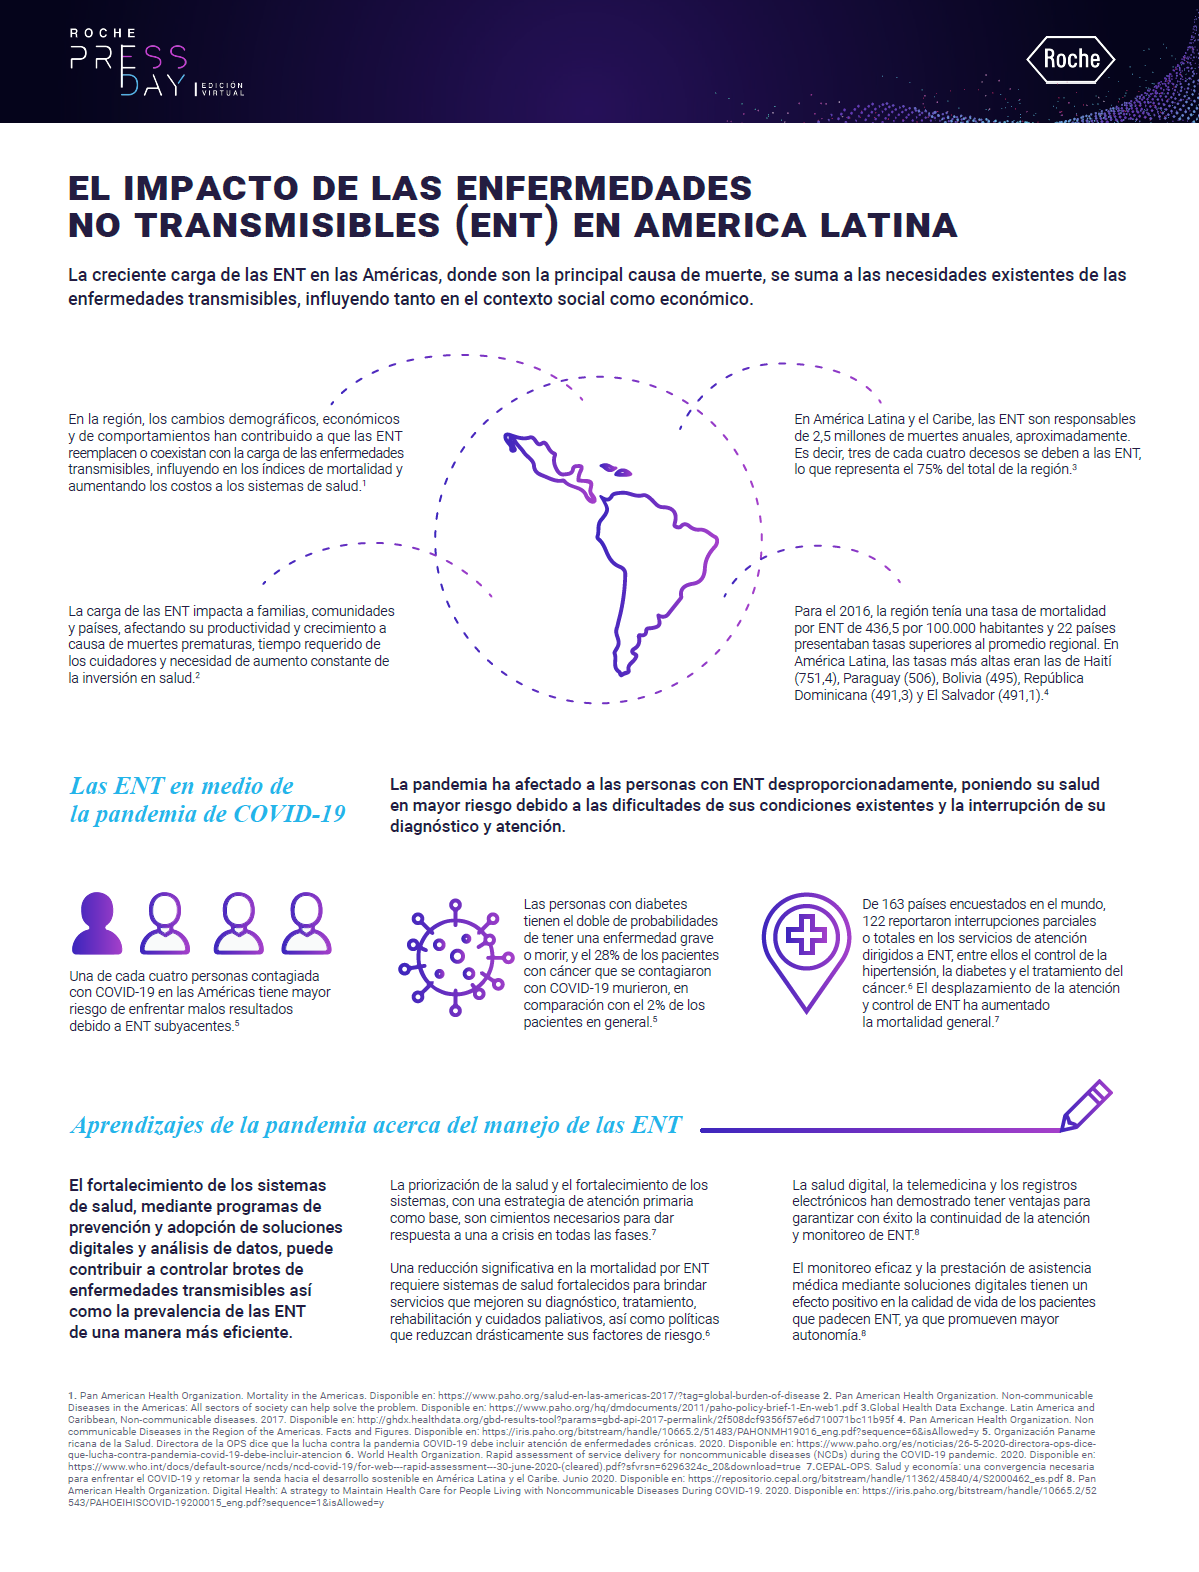 El impacto de las enfermedades no transmisibles (ENT) en América Latina